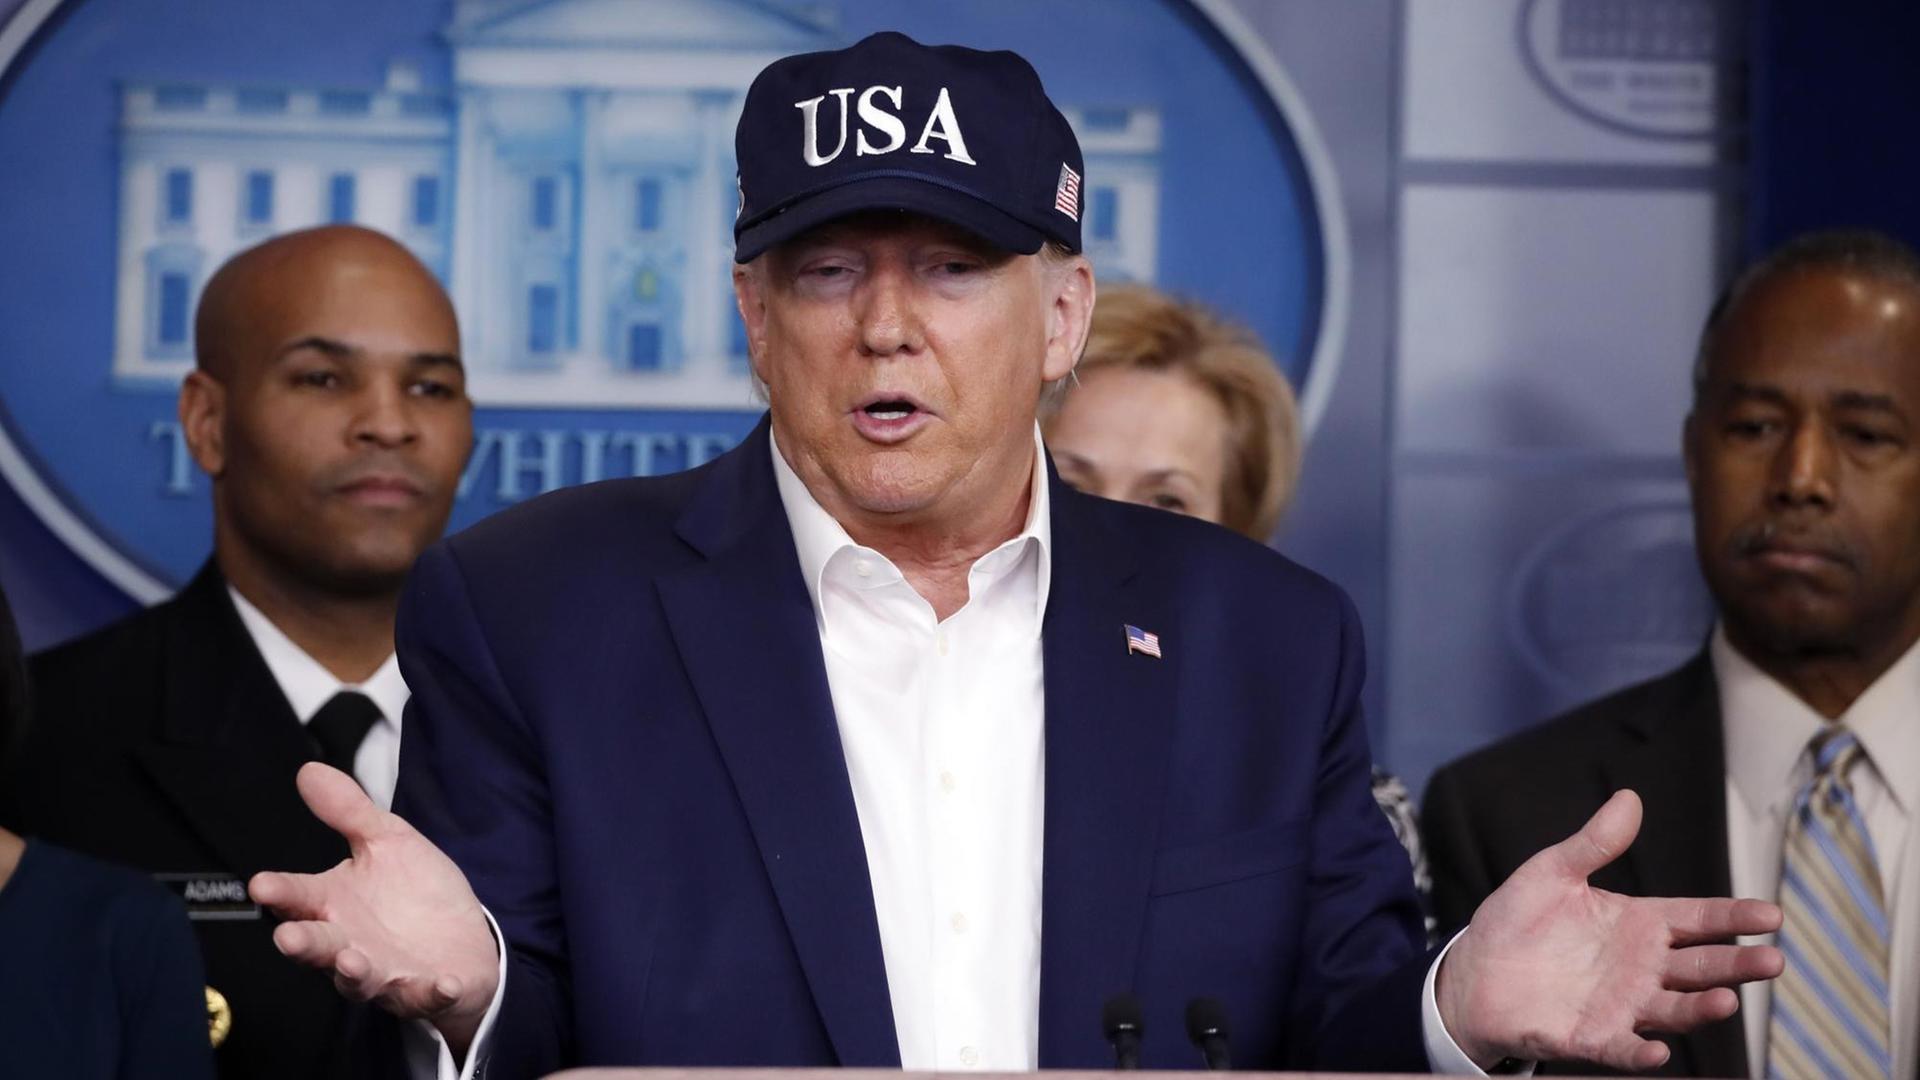 Trump steht in blauer USA-Baseballmütze am Rednerpult im Presseraum des Weißen Hauses. Hinter ihm stehen zwei Männer und eine Frau.